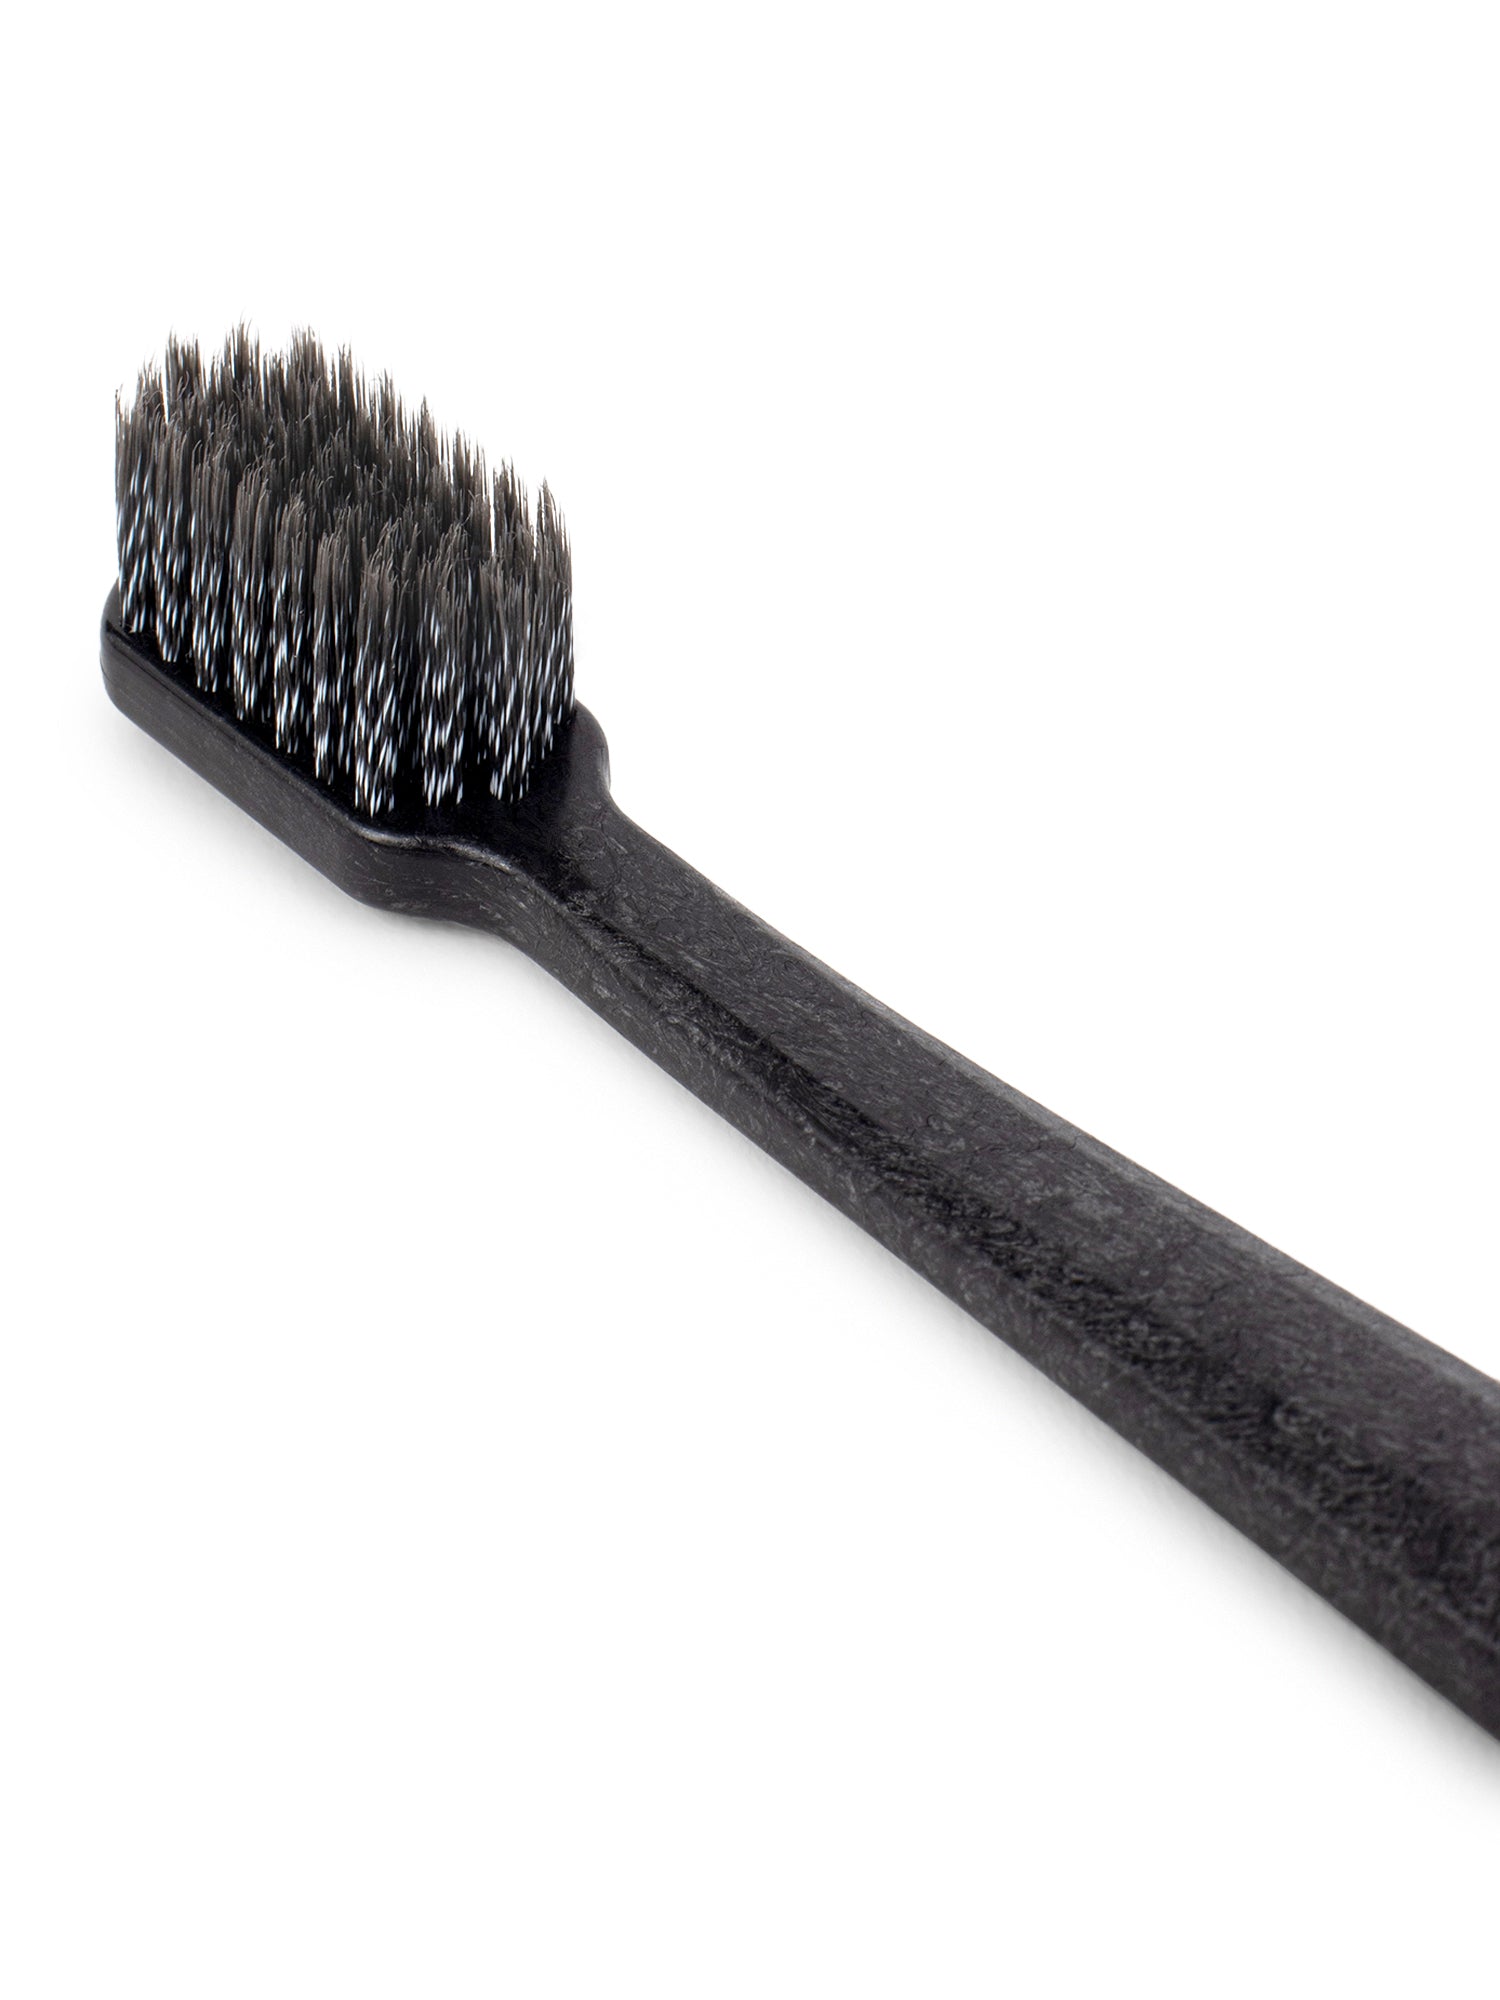 Bio Black Adult Biodegradable Toothbrush - Indian Dental Organization